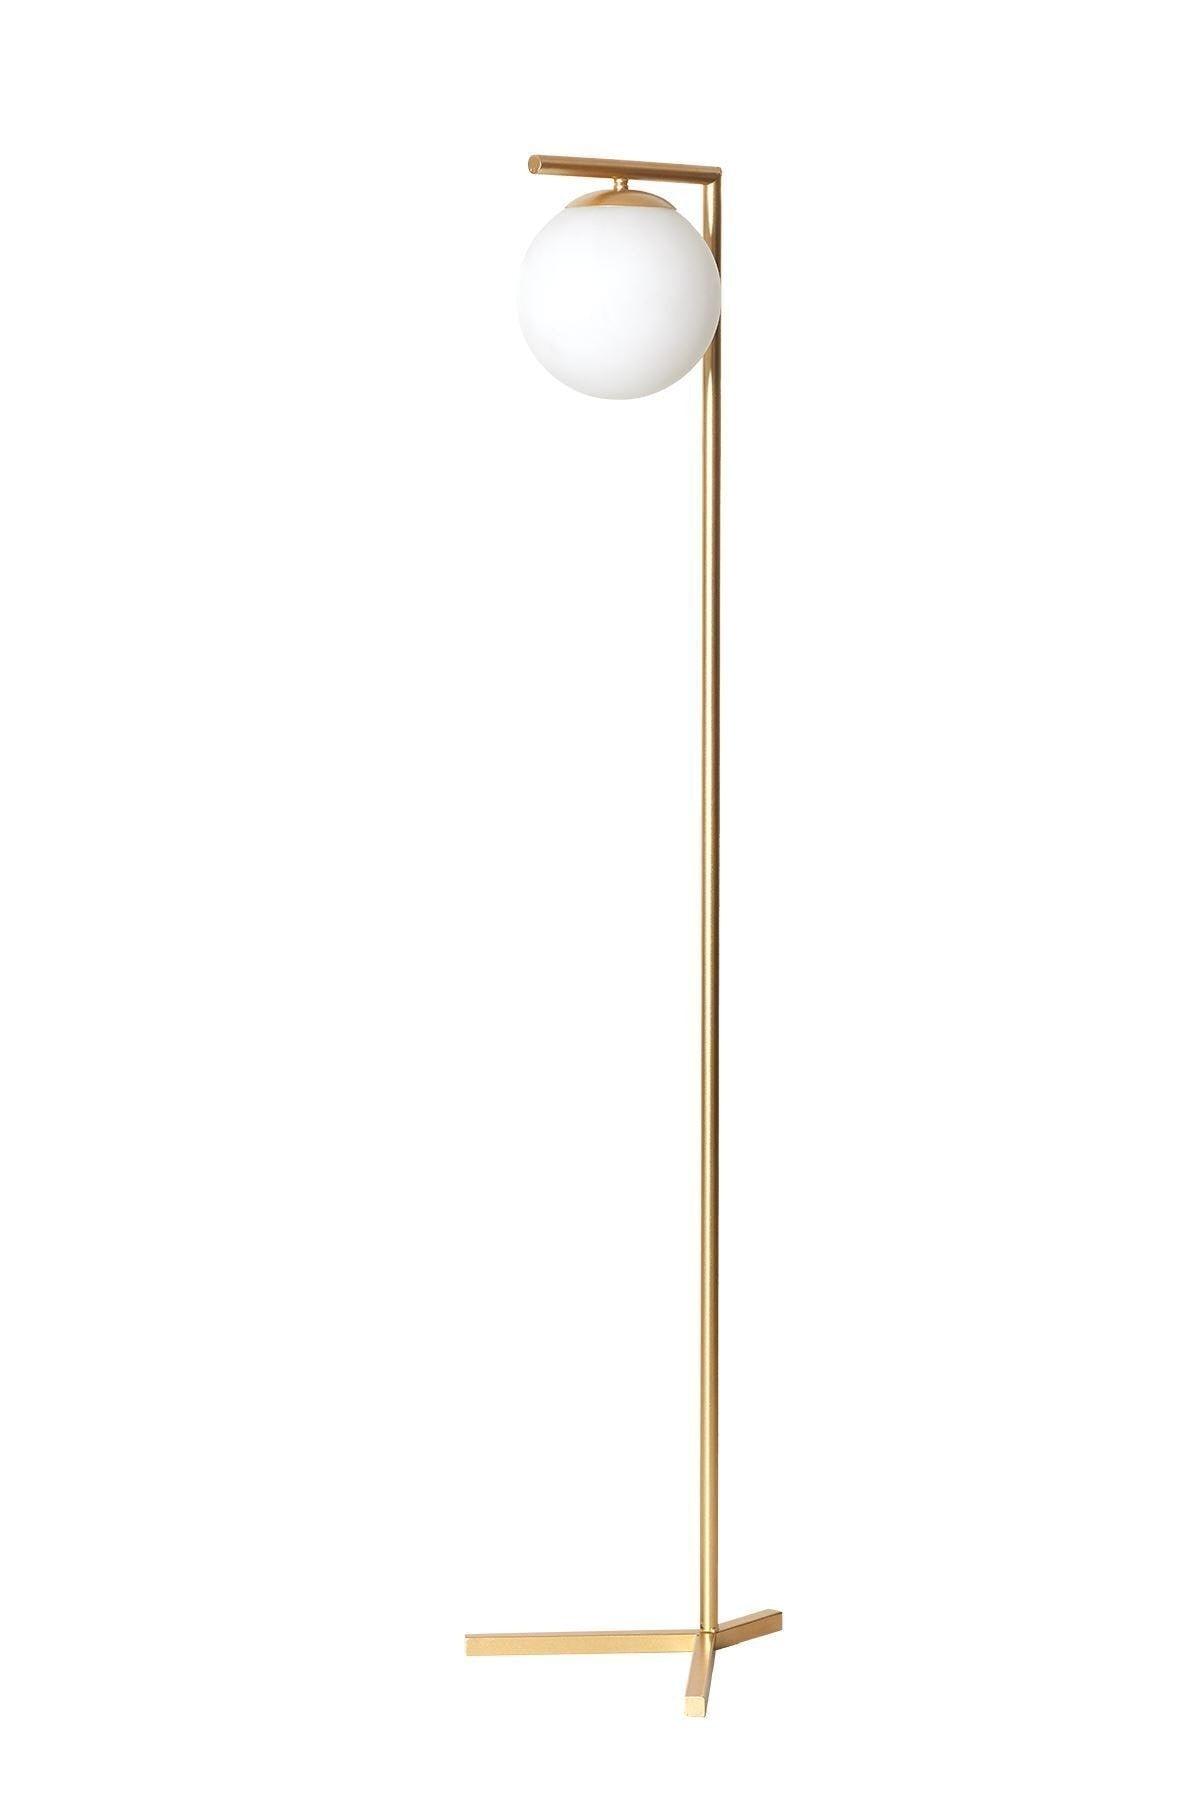 Linda Yellow Metal Body White Glass Design Luxury Floor Lighting Floor Lamp - Swordslife